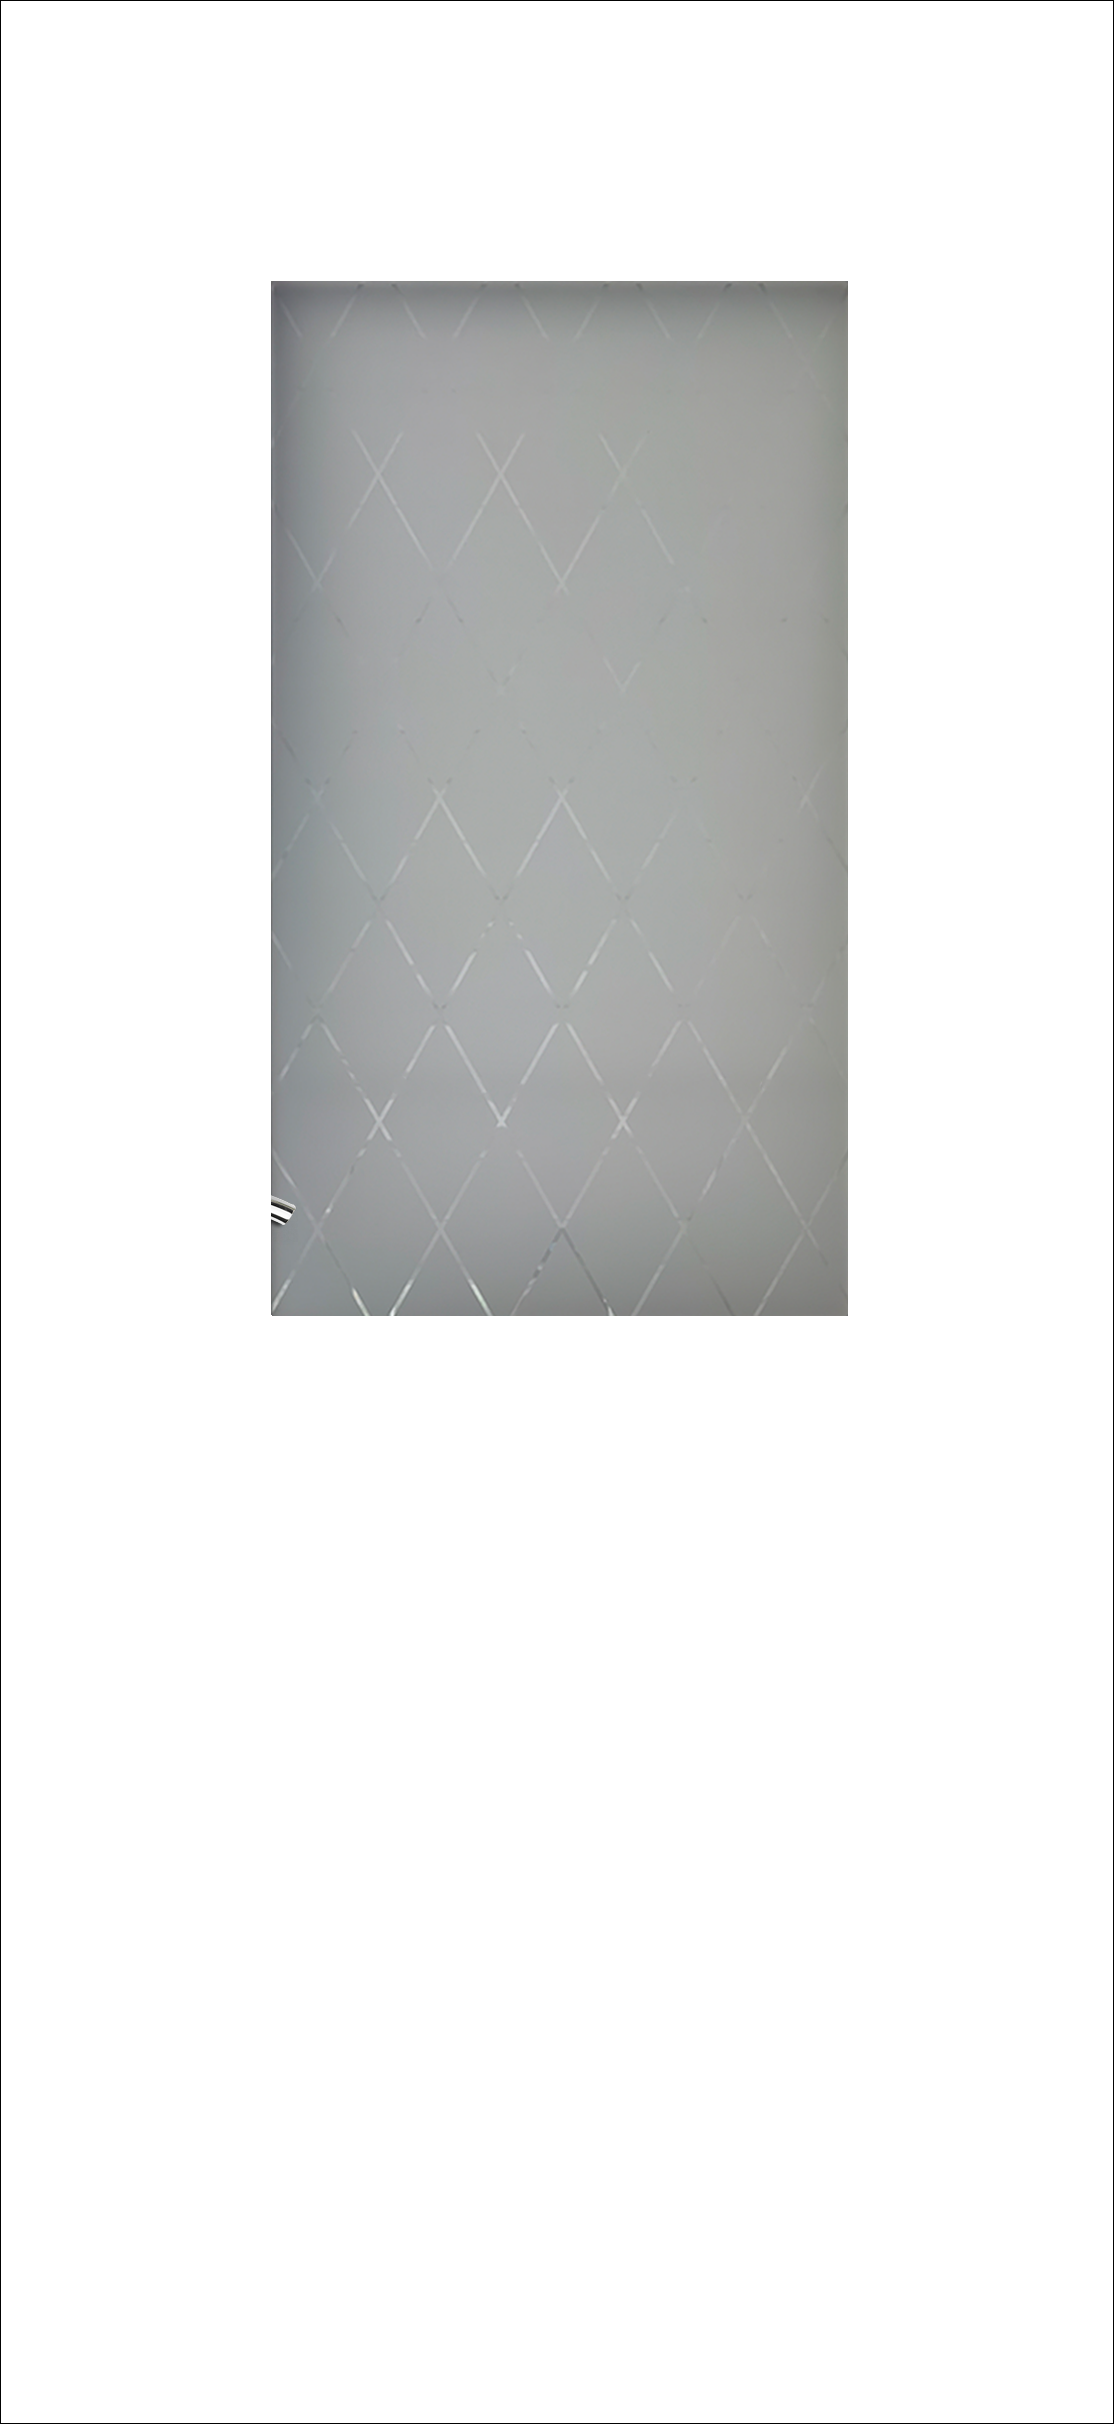 Межкомнатная дверь «Терри». Вид отделки Белая эмаль Остекление: Кристалл УФ фотопечать Cтандартный наличник